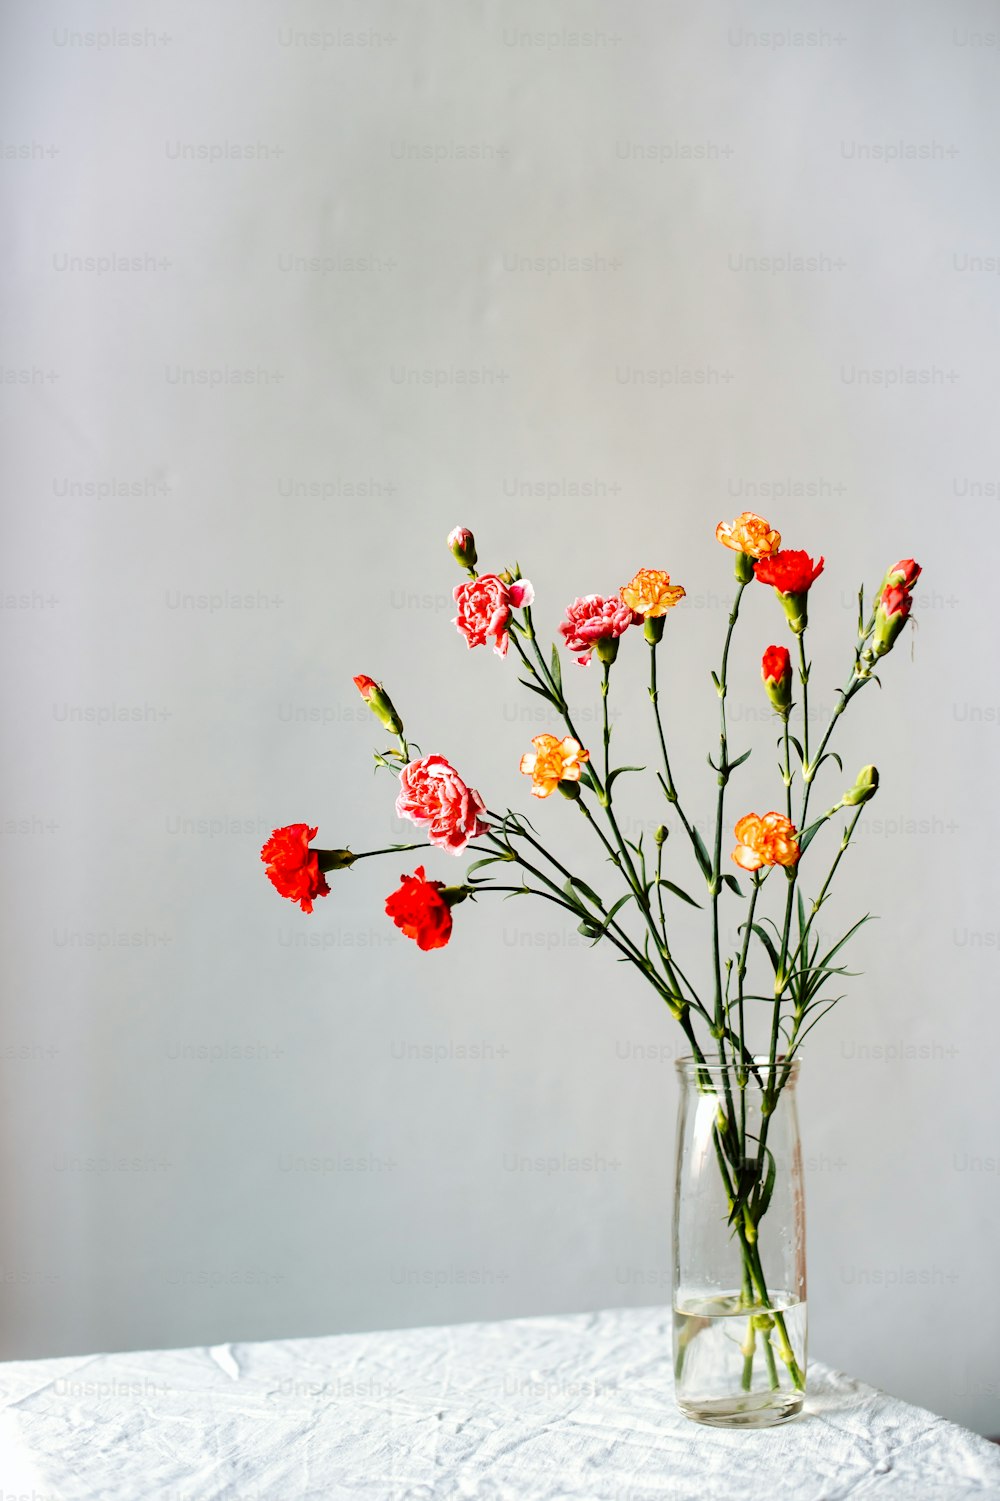 Un jarrón de vidrio lleno de flores encima de una mesa